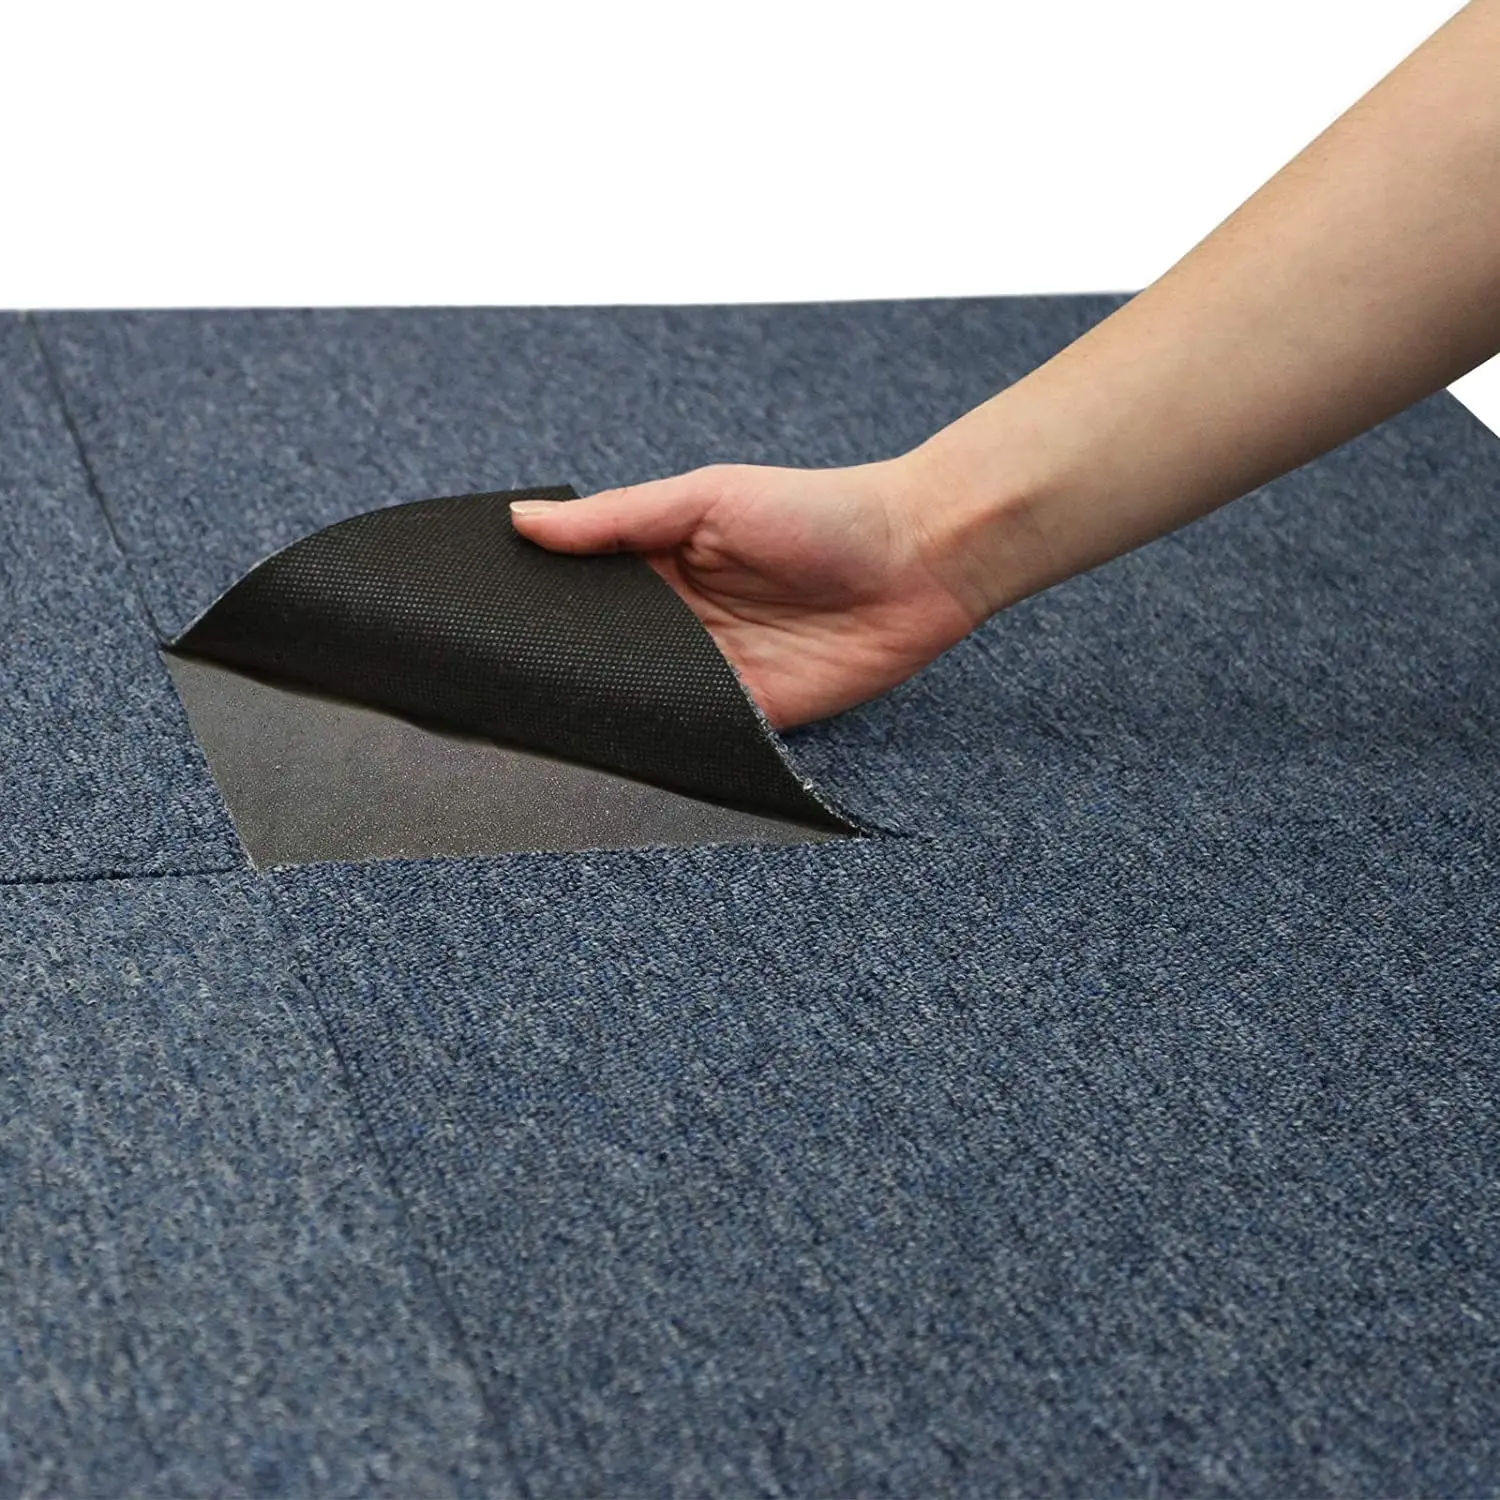 10m2 Box Heavy Duty Commercial Retail Office Premium Flooring Carpet Tiles 5m2 